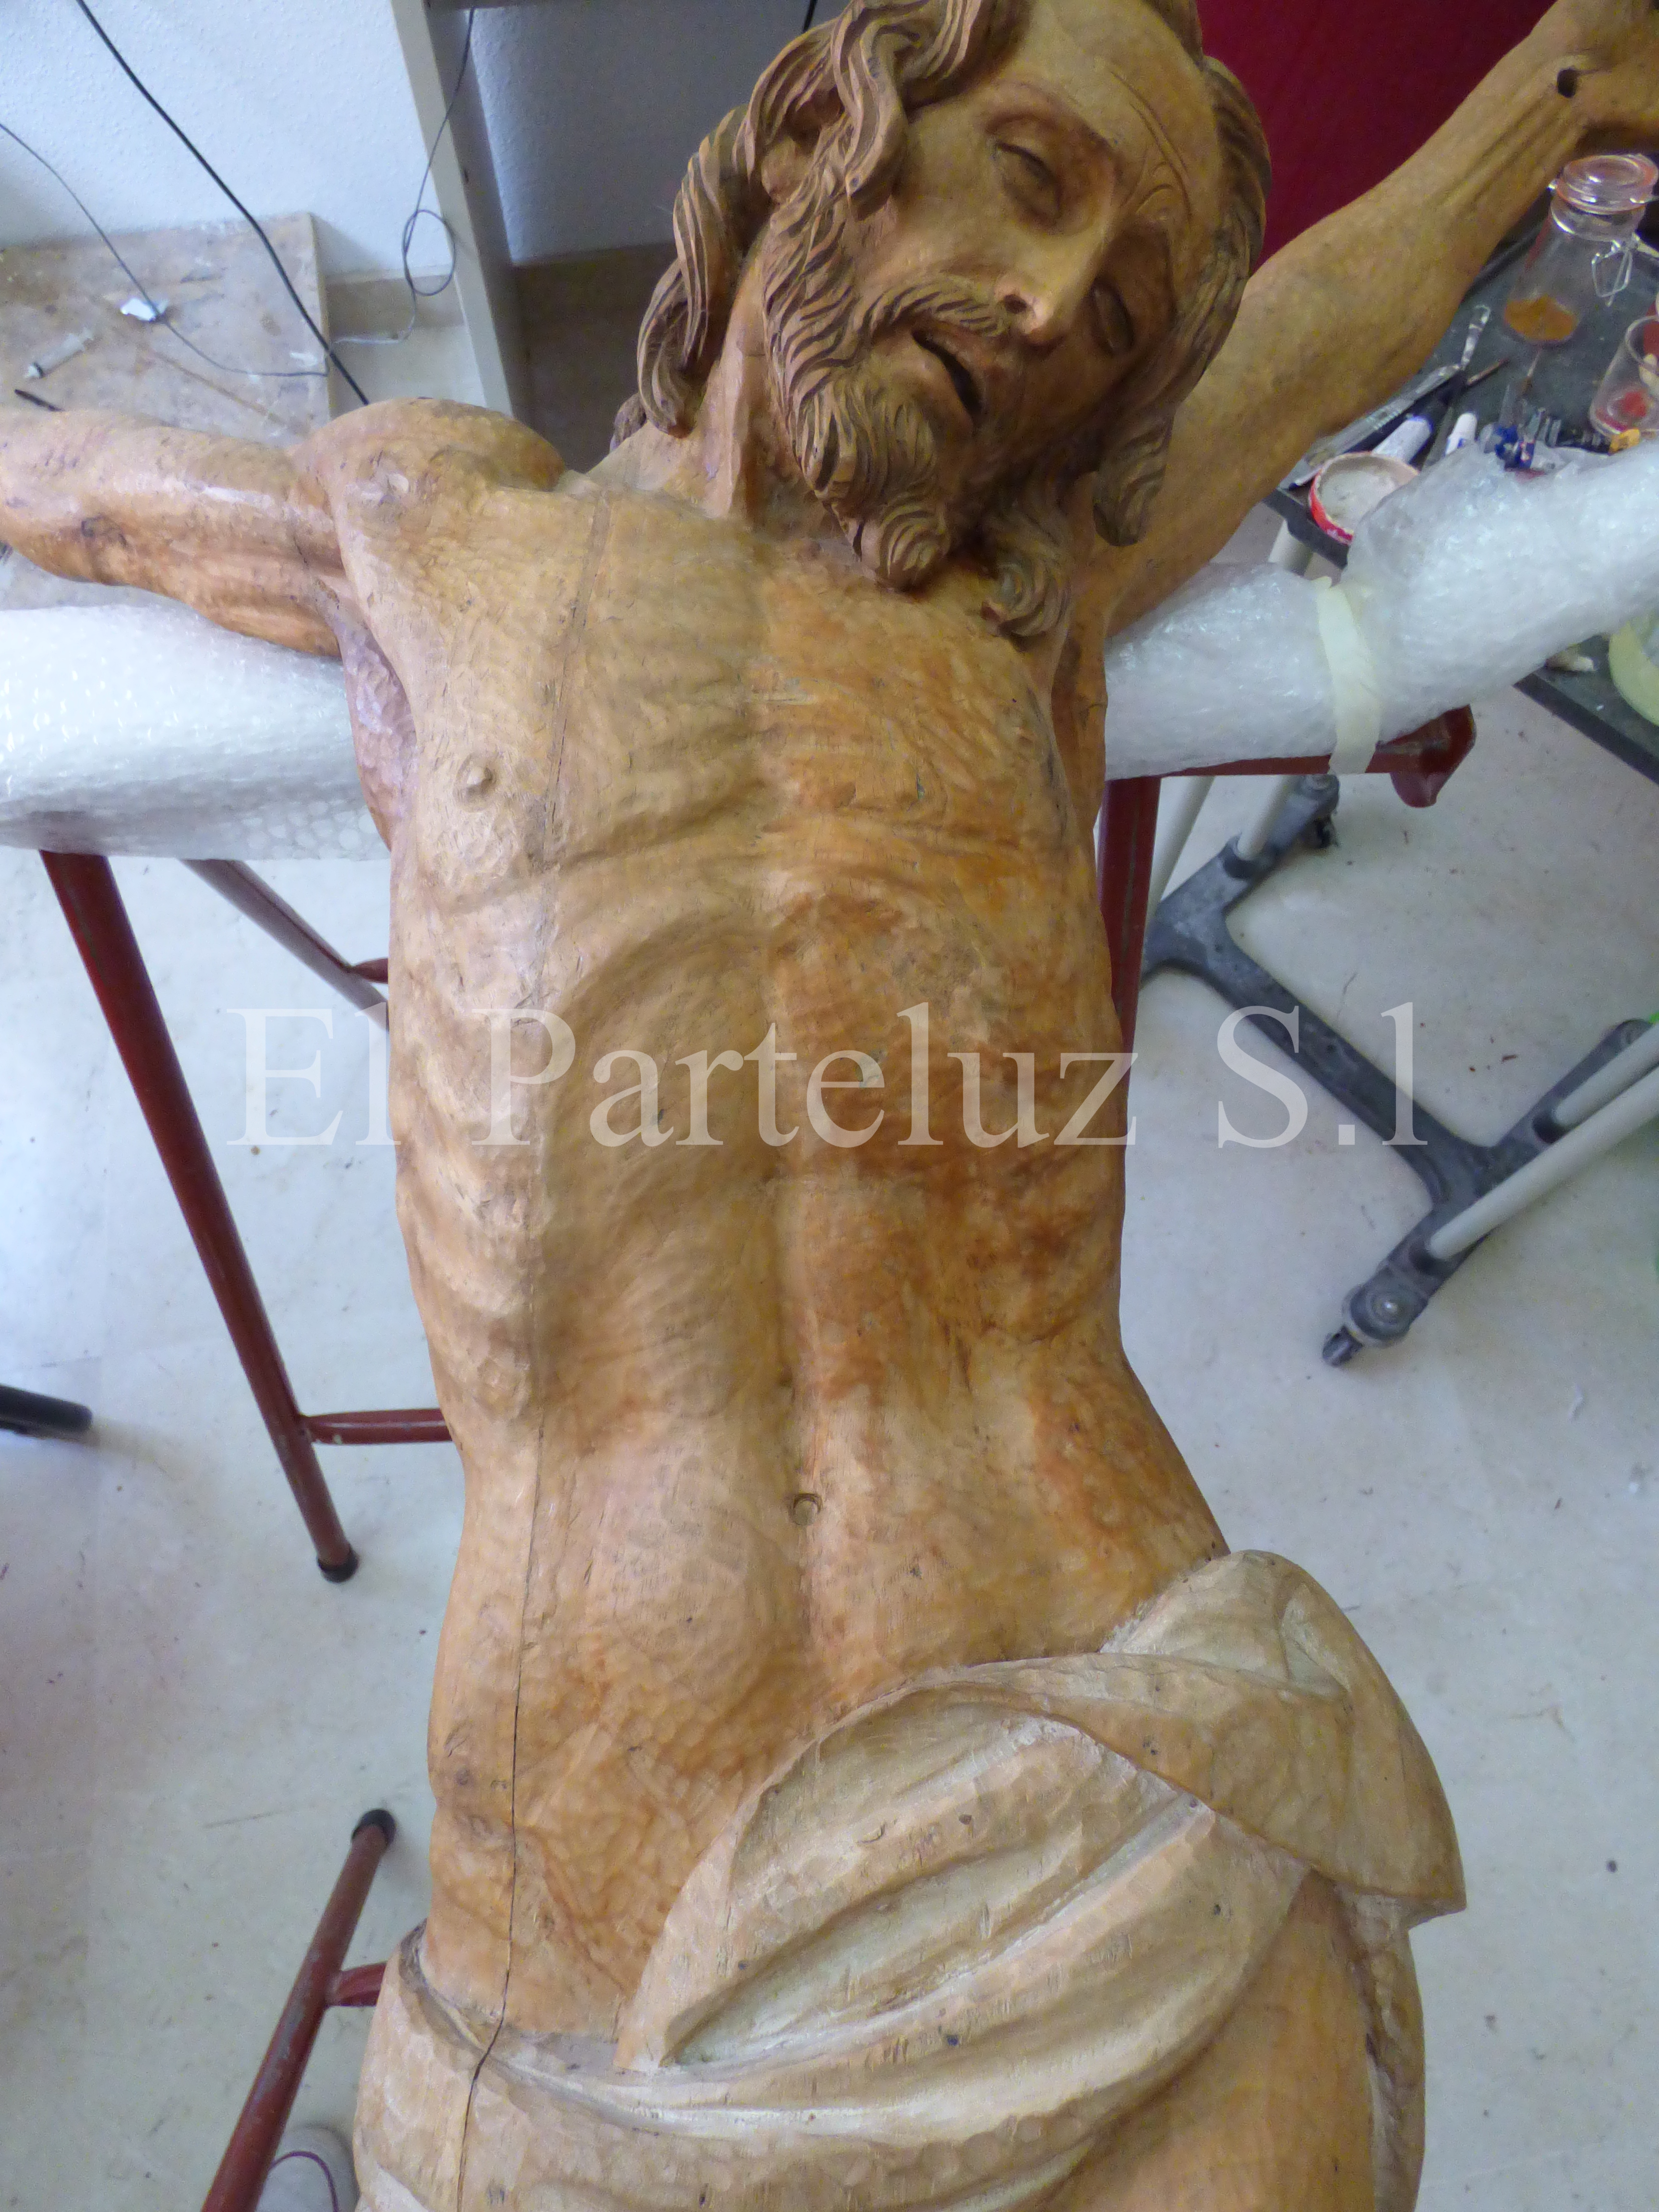 Proceso de restauración. Cristo Crucificado de la Iglesia de San José Albacete. El Parteluz. SL. Pablo Nieto Vidal.